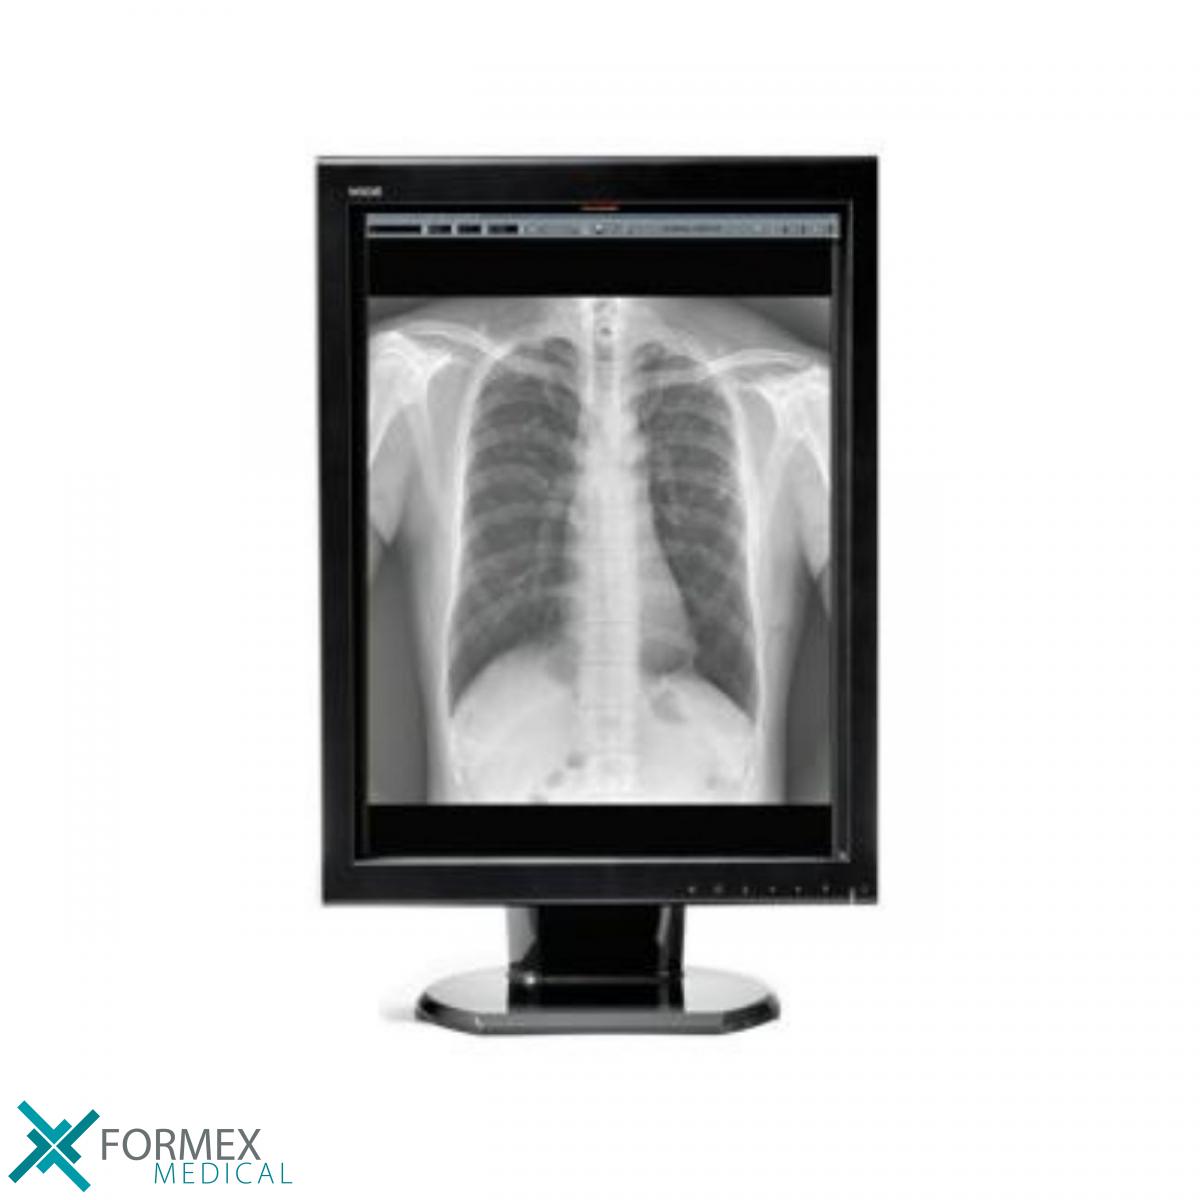 Wide MX30, medical displays, medische schermen, eizo medical monitor, medische monitoren, eizo medical, medische beeldschermen, diagnostische monitoren, diagnostiek monitoren, eizo monitor